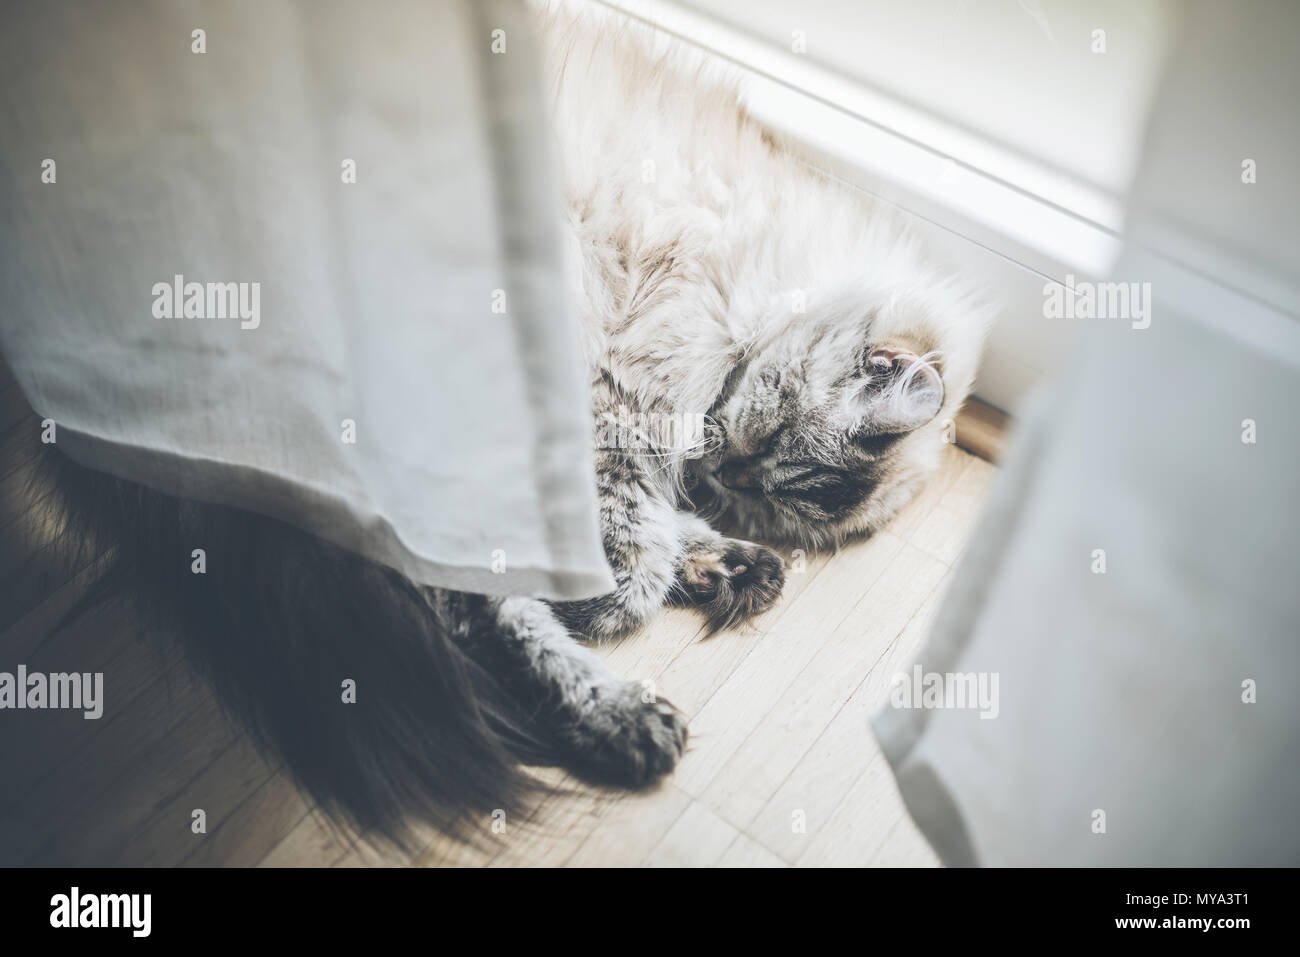 Fluffy Gatto sdraiato dietro il sipario sul pavimento in legno dormendo Foto Stock